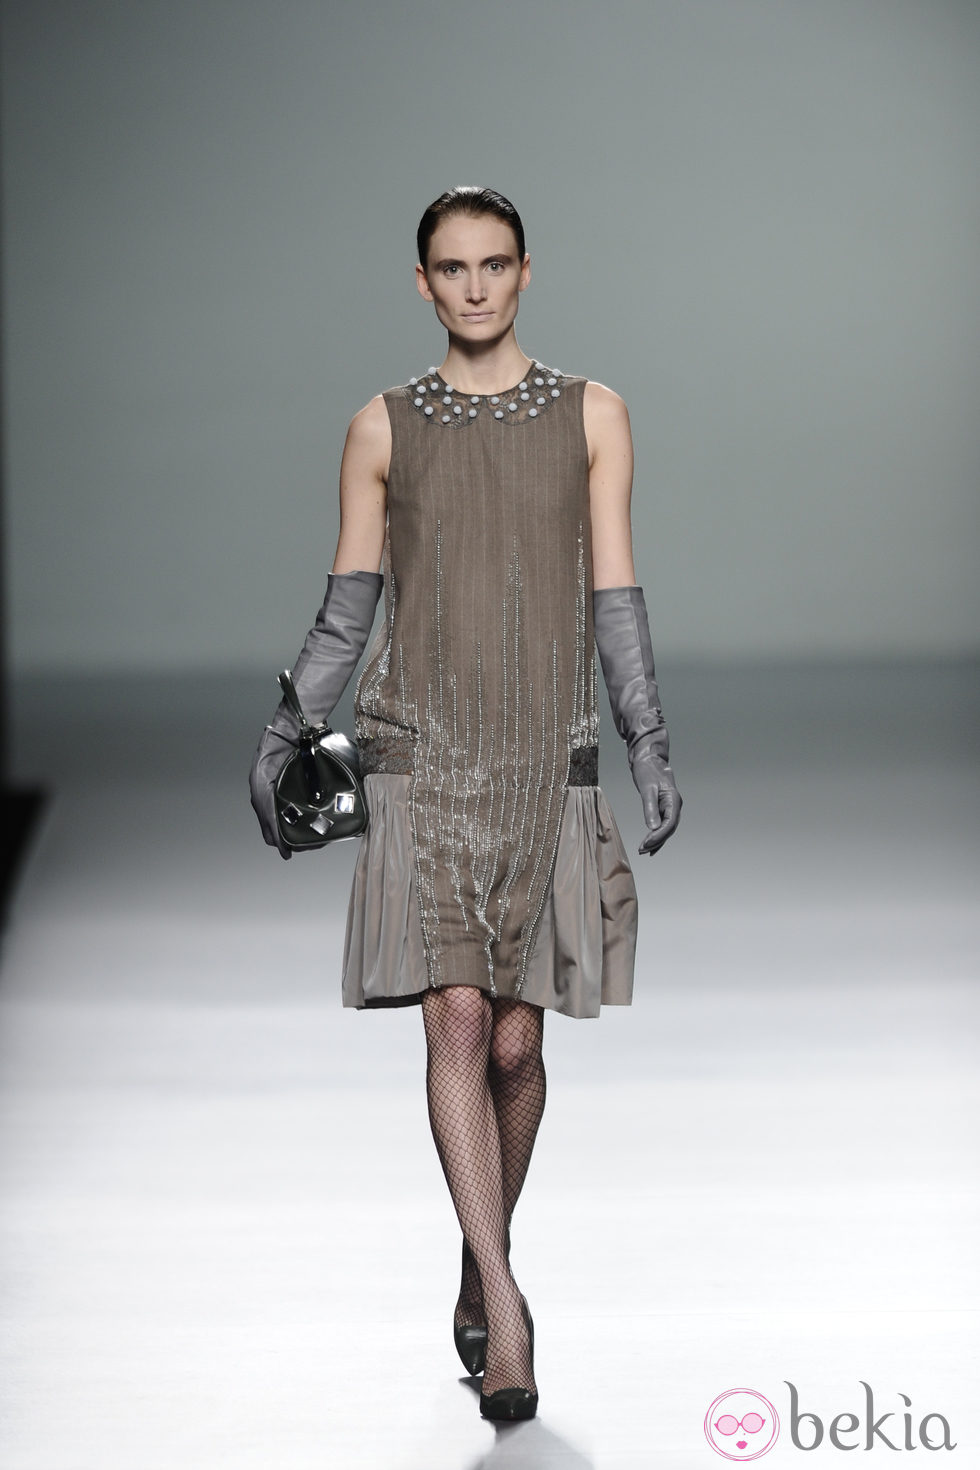 Vestido con trasparencias de la colección otoño/invierno 2013/2014 de Victorio y Lucchino en Madrid Fashion Week